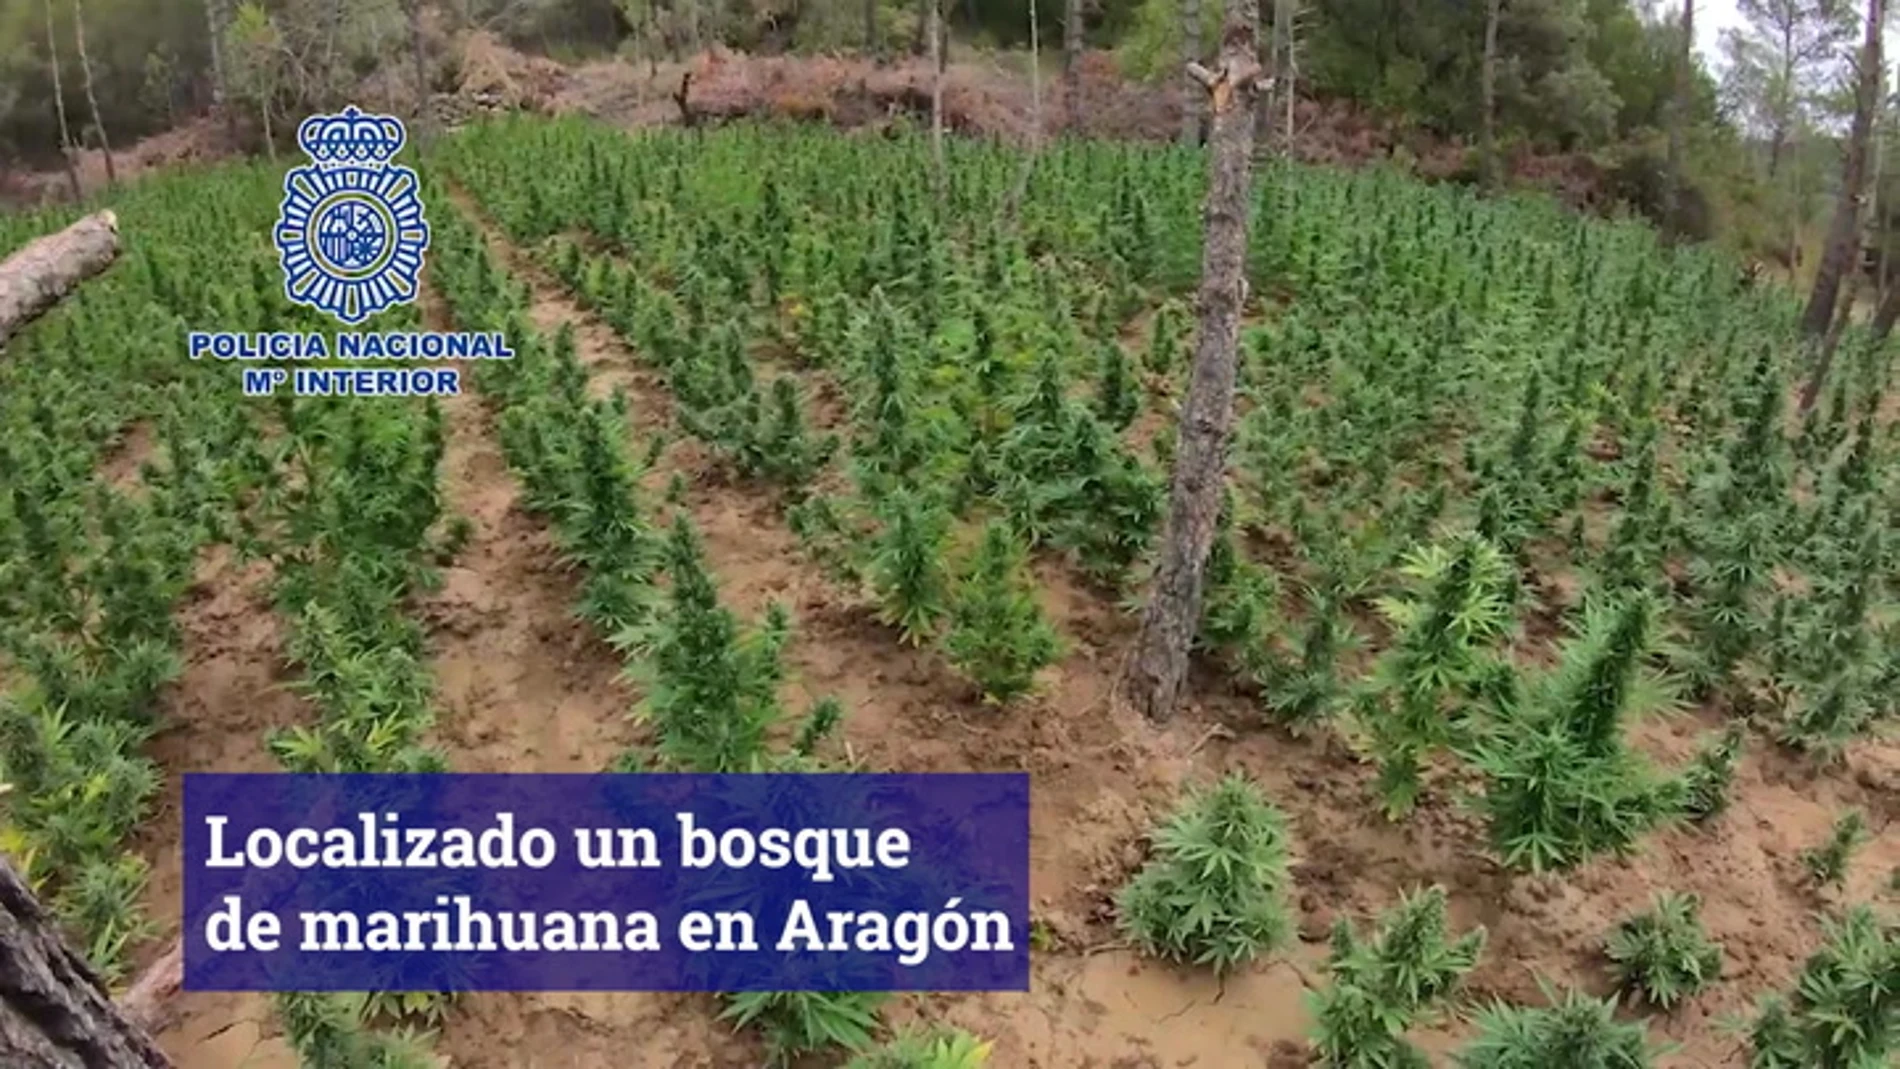 Bosque de marihuana en Aragón